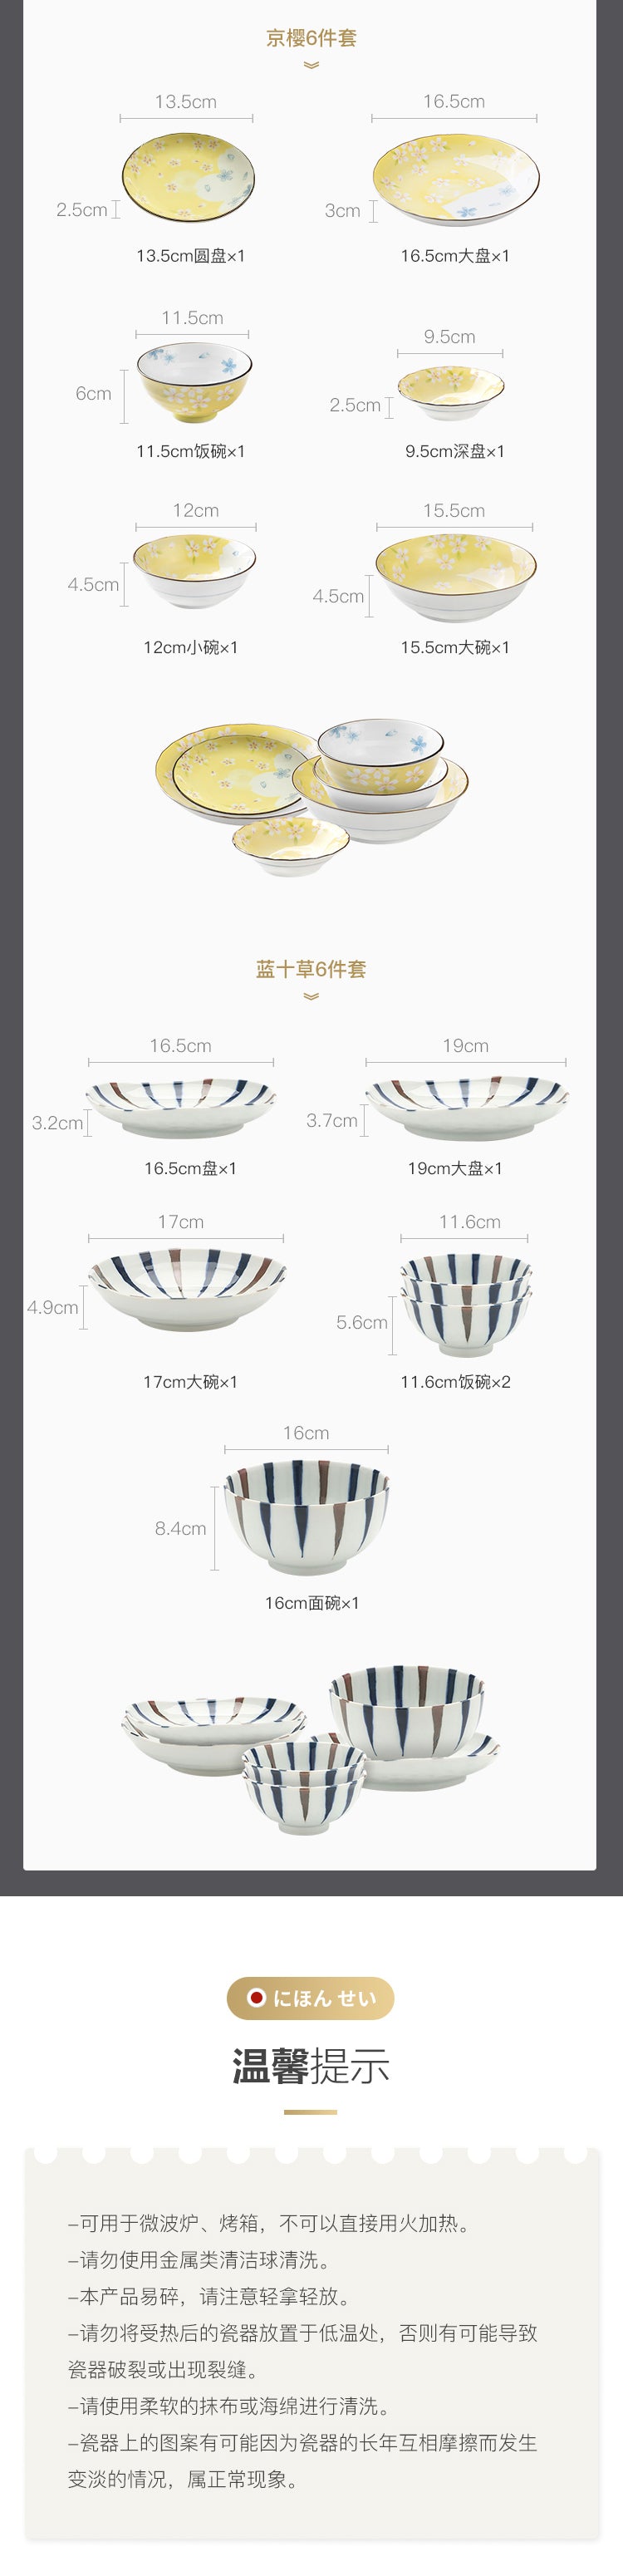 Made in Japan Kyo Sakura 6-piece tableware set  [5-7 Days U.S. Free Shipping]